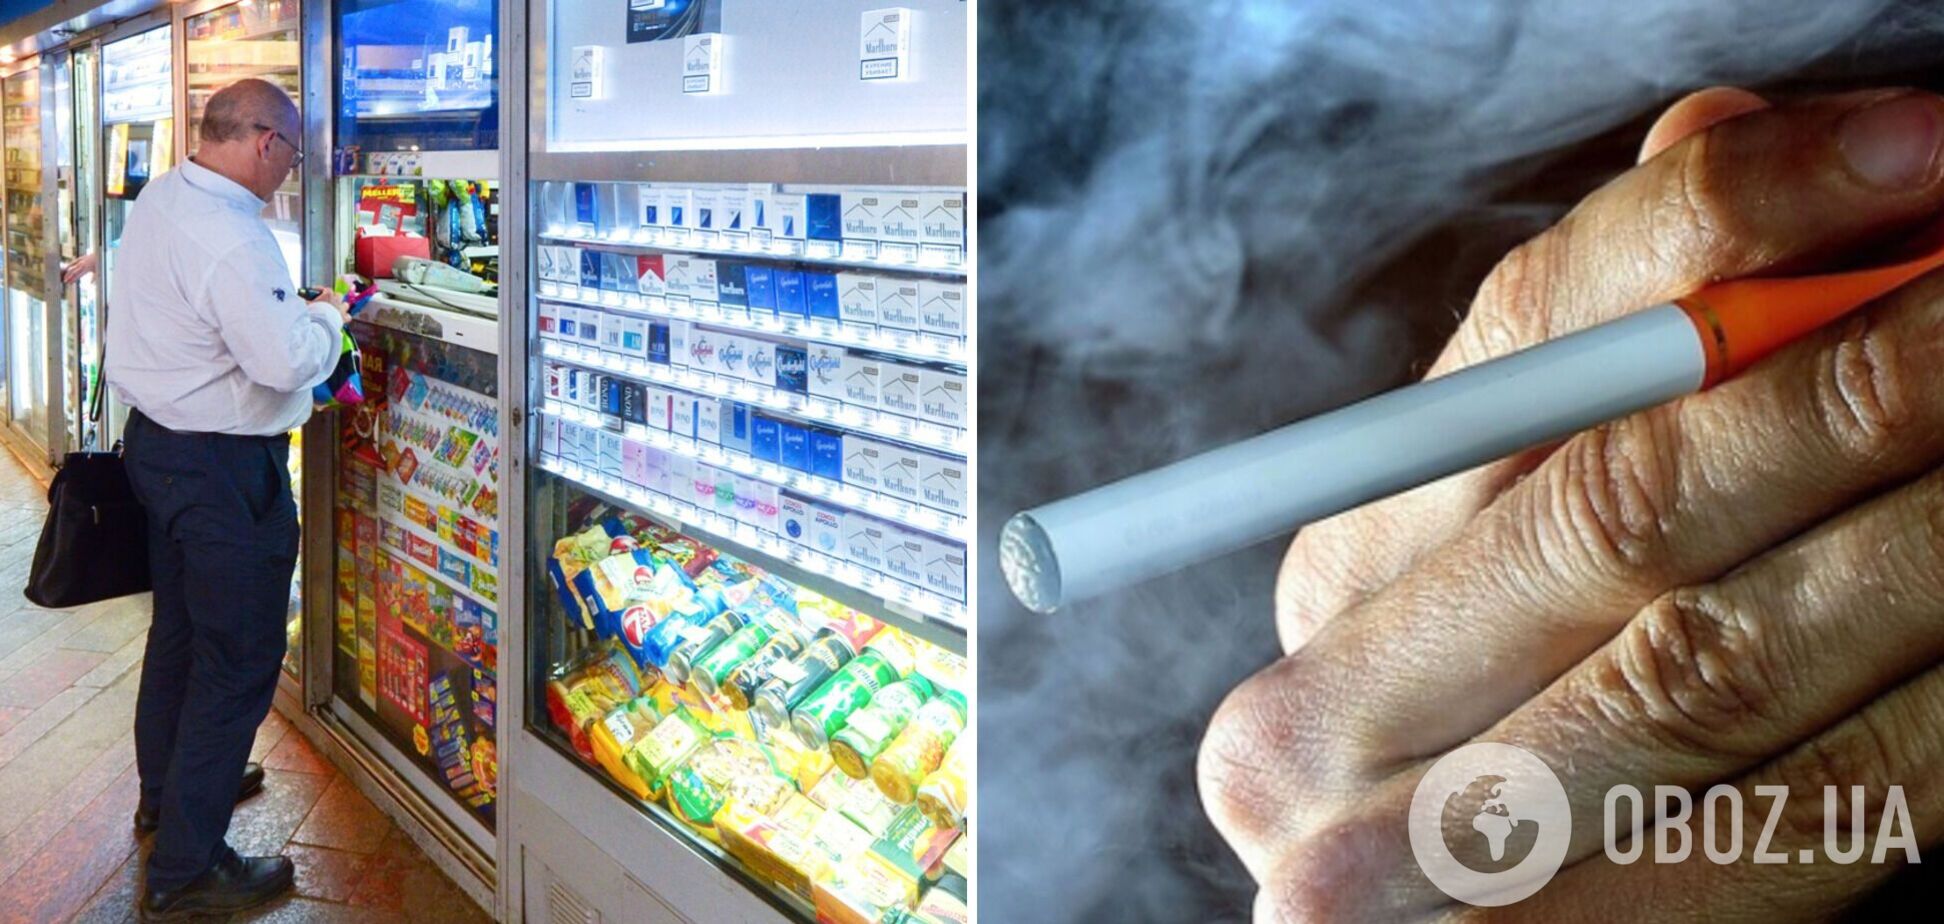 Миллиардный ущерб и массовые увольнения: СМИ рассказали, что не так с возможным запретом выкладки табачных изделий